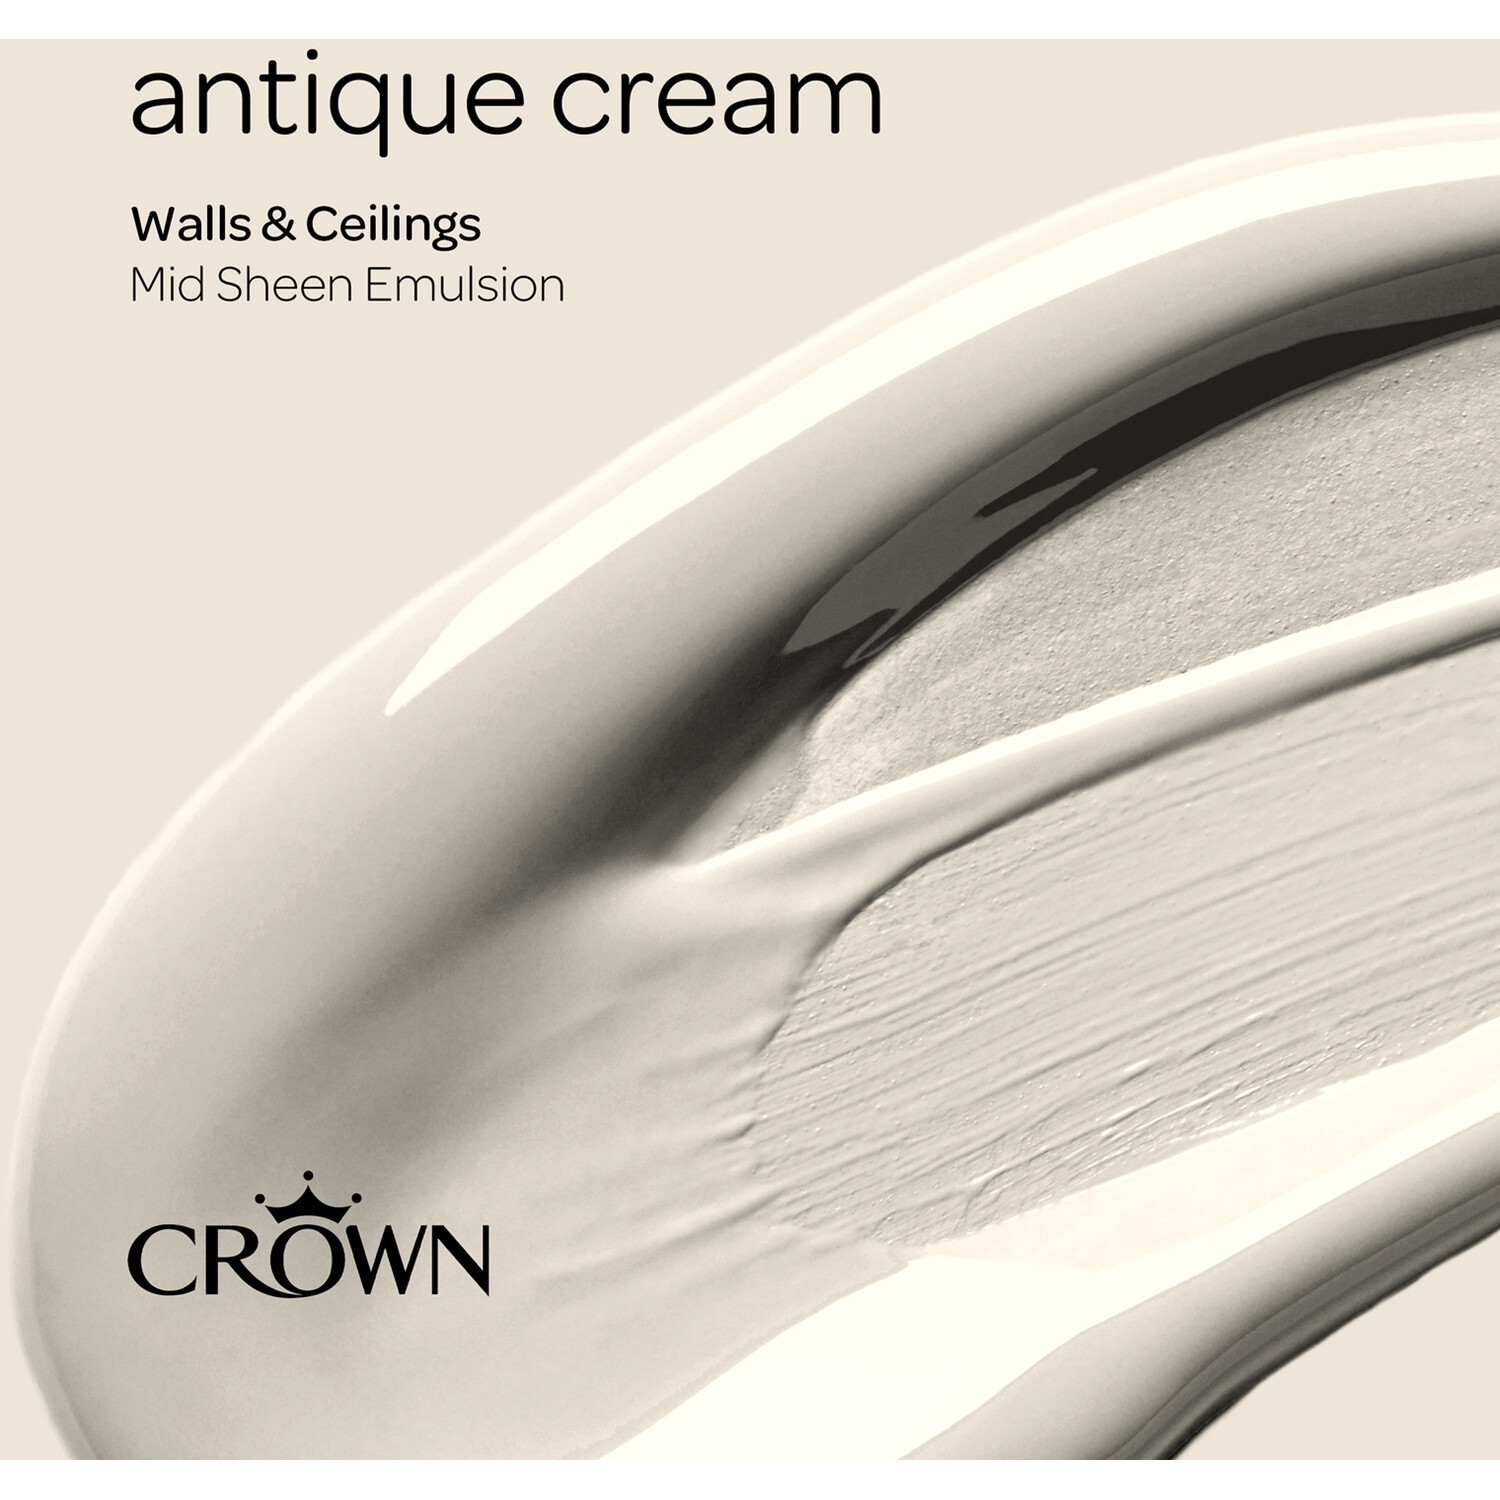 Crown Walls & Ceilings Antique Cream Mid Sheen Emulsion Paint 2.5L Image 4